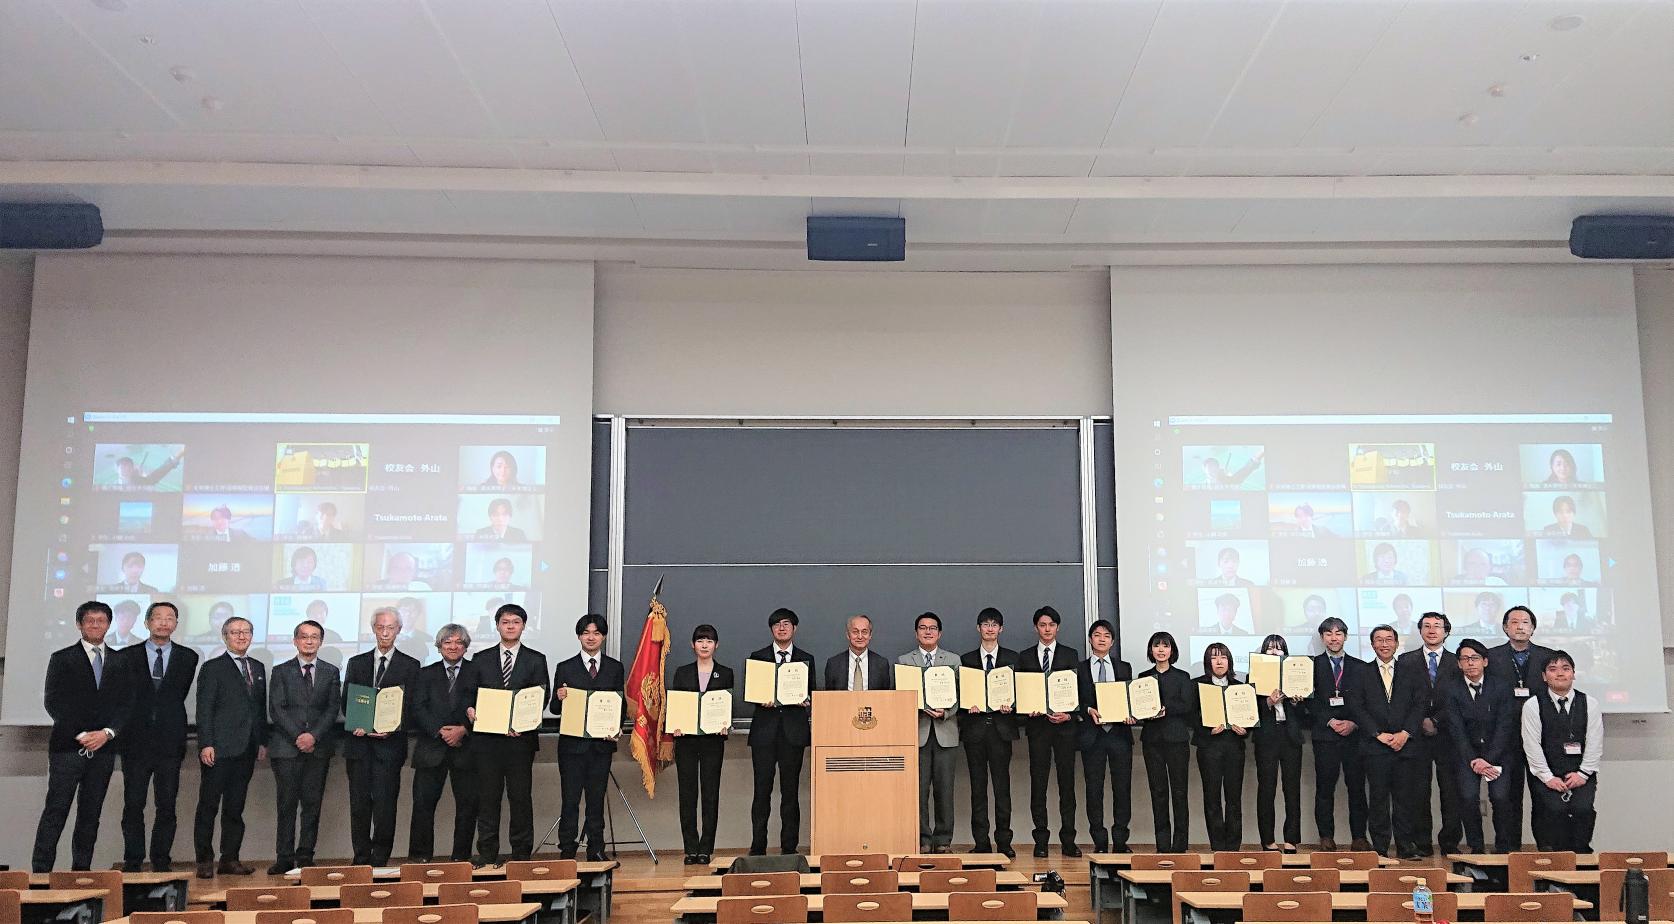 3月12日(土)未来博士工房学生博士賞表彰式および成果報告会が執り行われました。